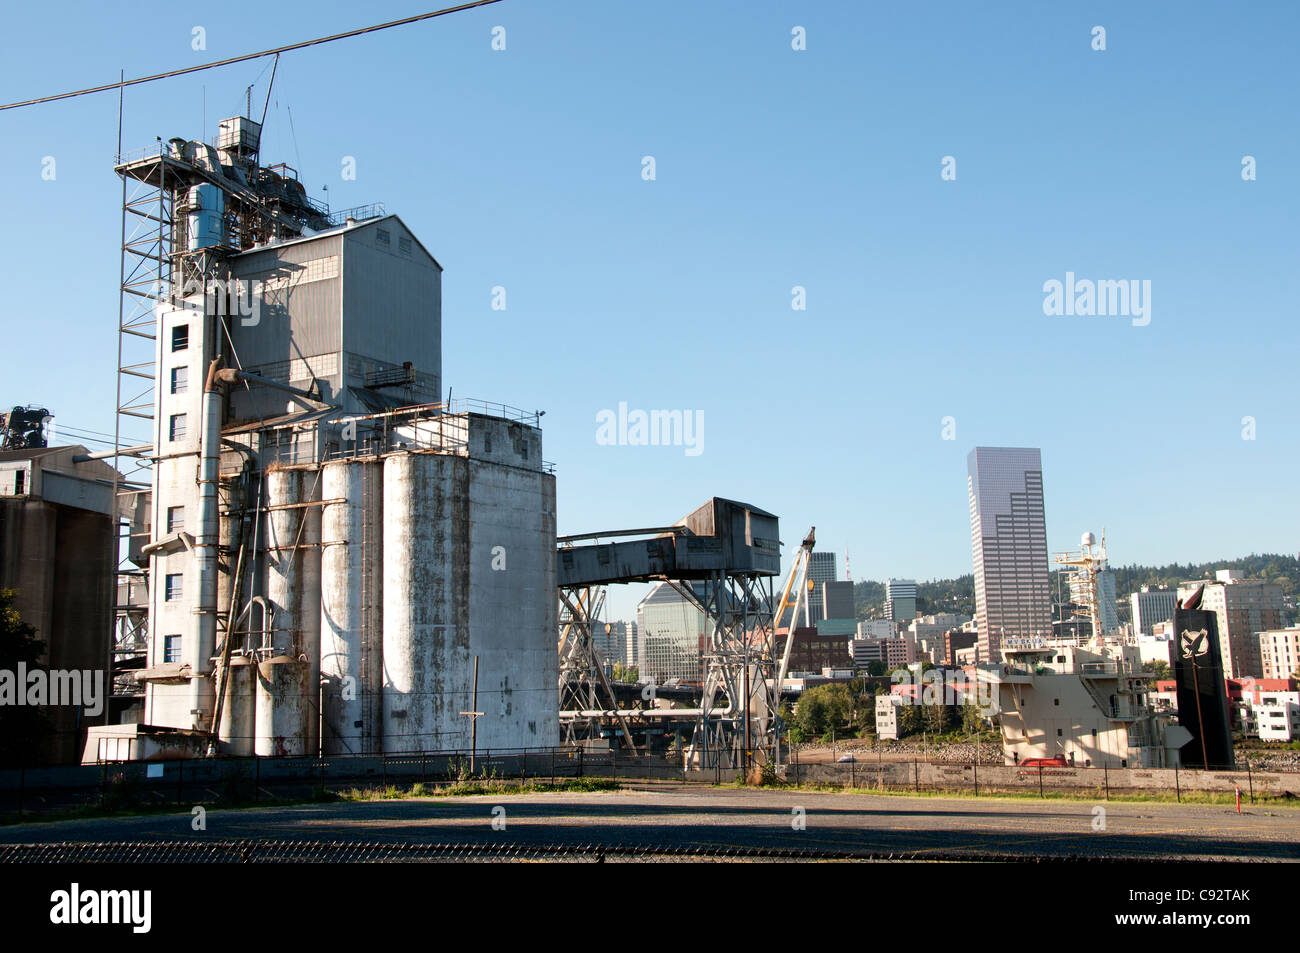 Portland Cement Company Impianto di fabbrica Oregon Stati Uniti vicino a ponte in acciaio sul fiume Willamette Foto Stock